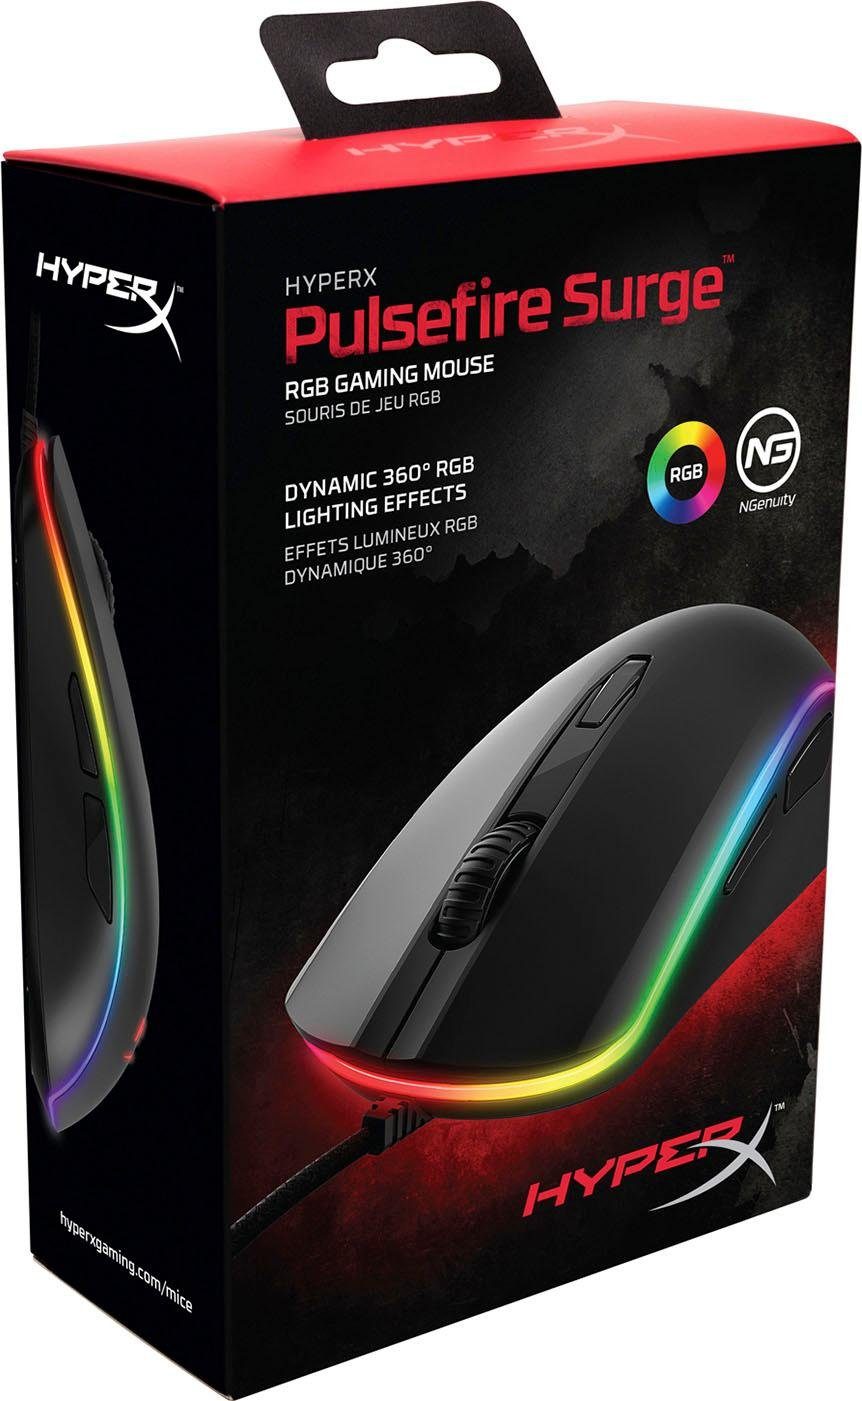 HyperX HyperX Pulsefire Gaming-Maus Surge RGB (kabelgebunden)